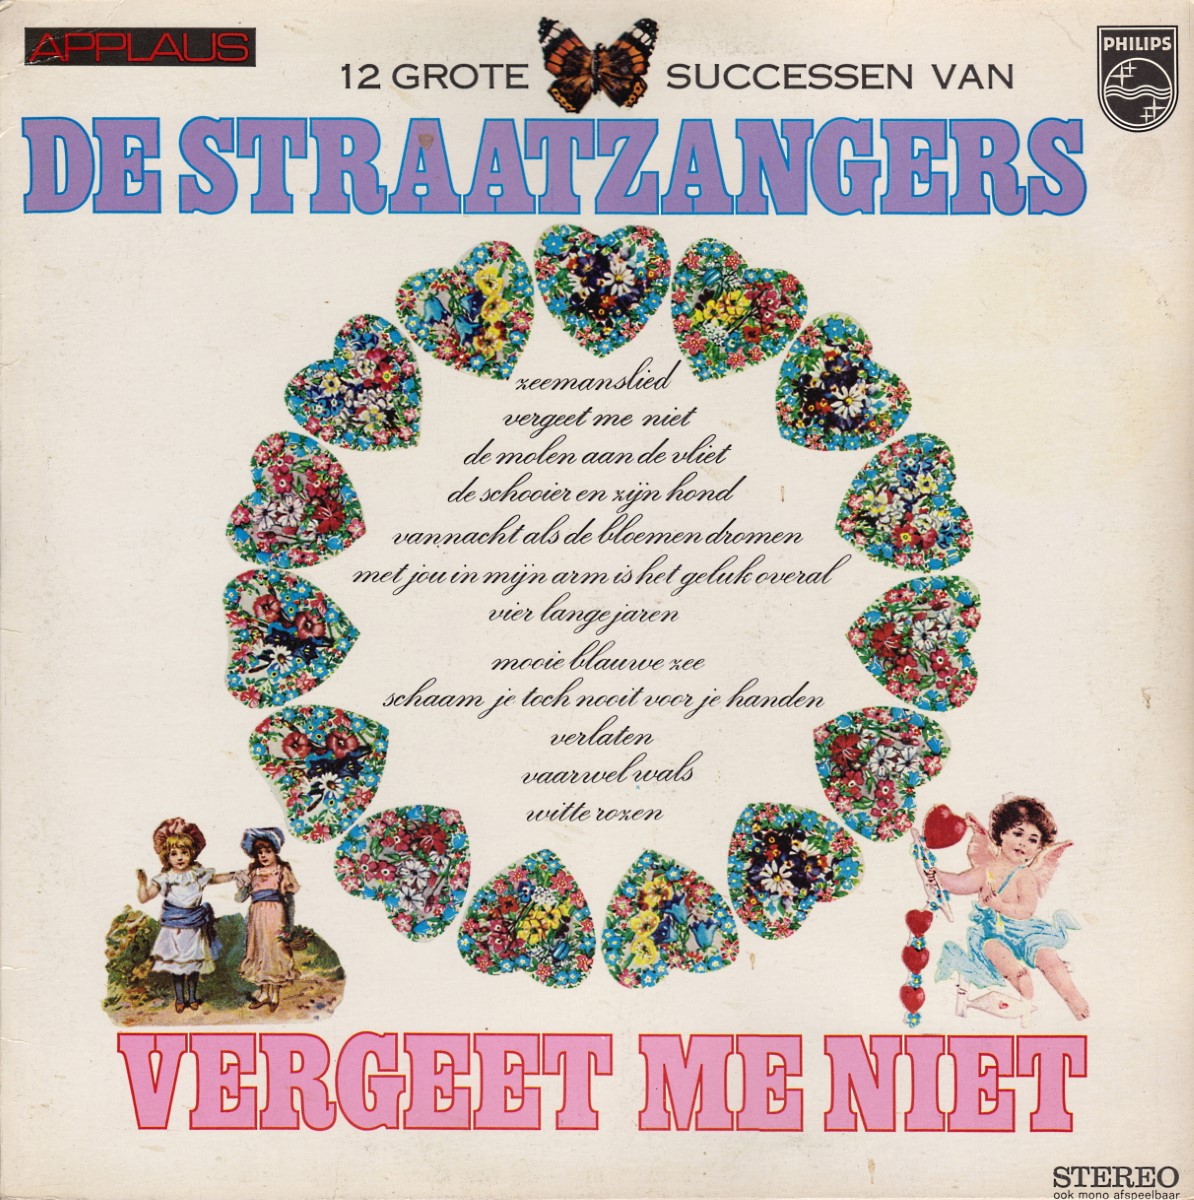 De Straatzangers - Vergeet Me Niet (12 Grote Successen Van) (1974)